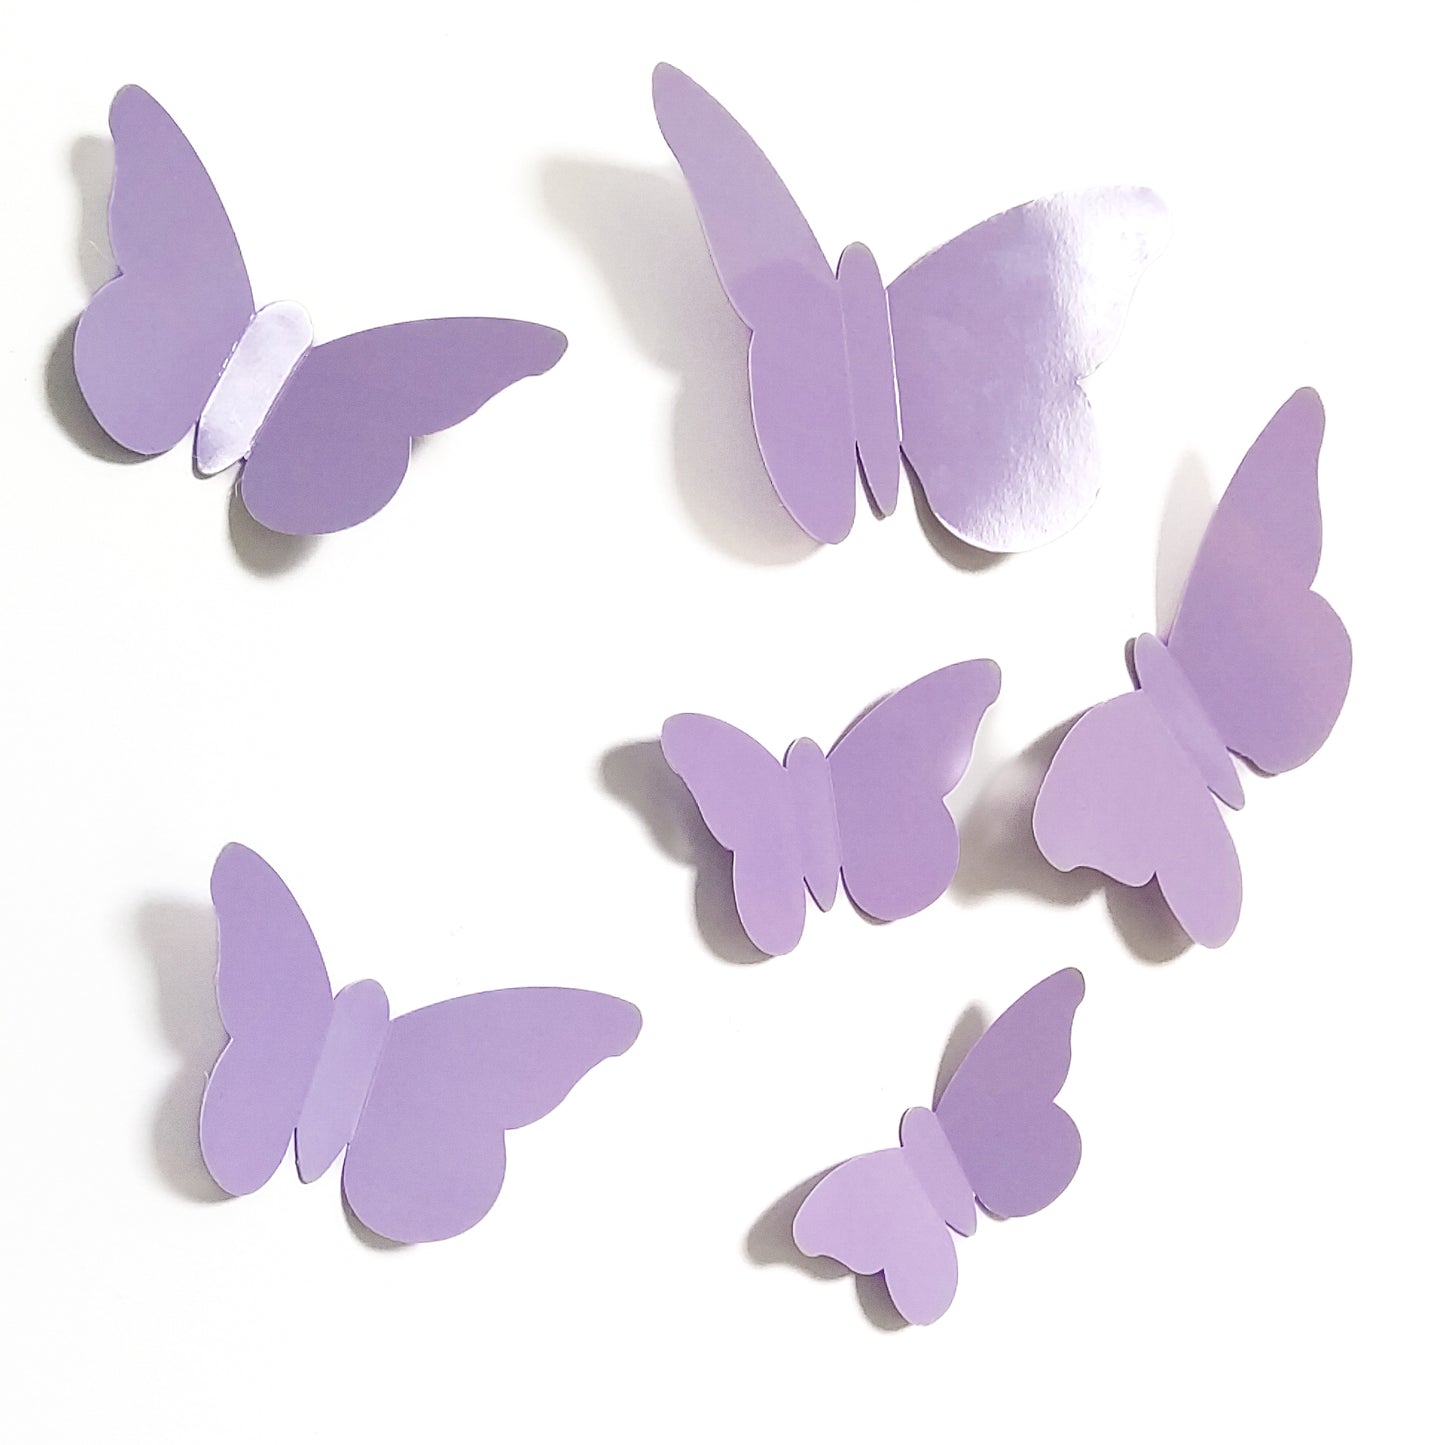 Stickers Papillons en relief – Bulles de Citron Design